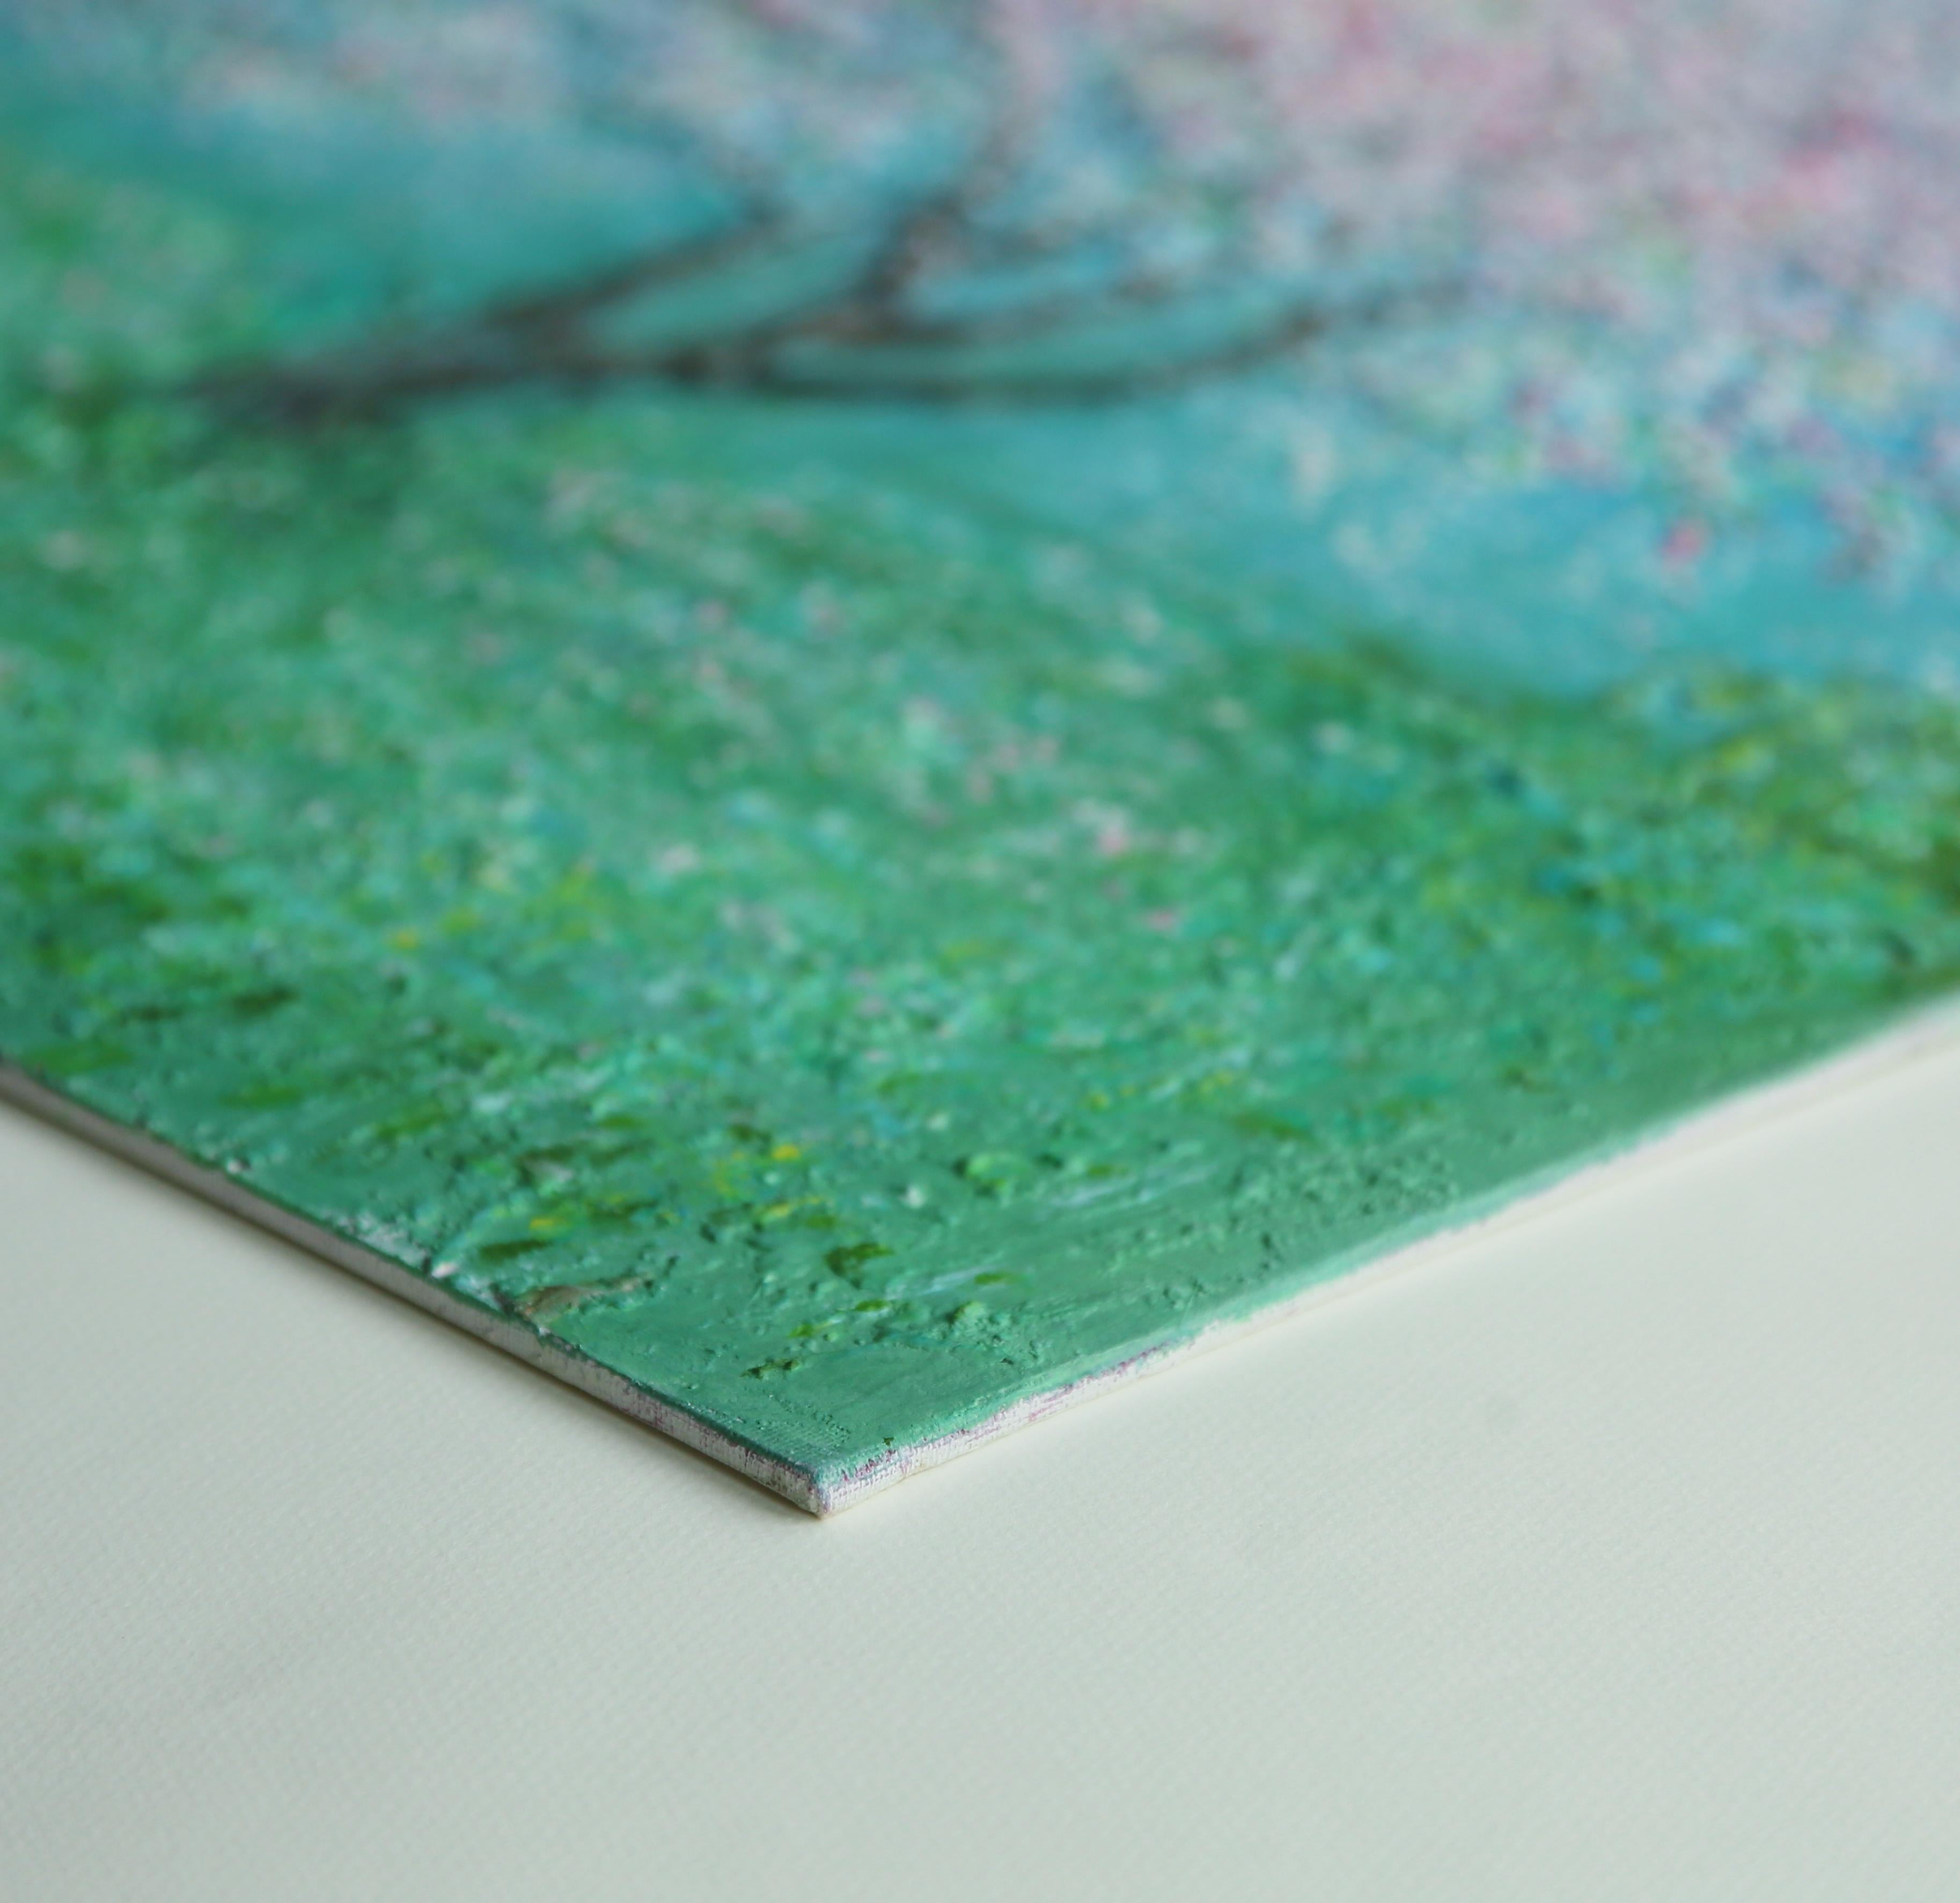 'Apple Blossom' (fleur de pommier)
Acrylique et plâtre de marbre sur toile.  Encadré
Taille de l'image 60x60 cm. 23.5